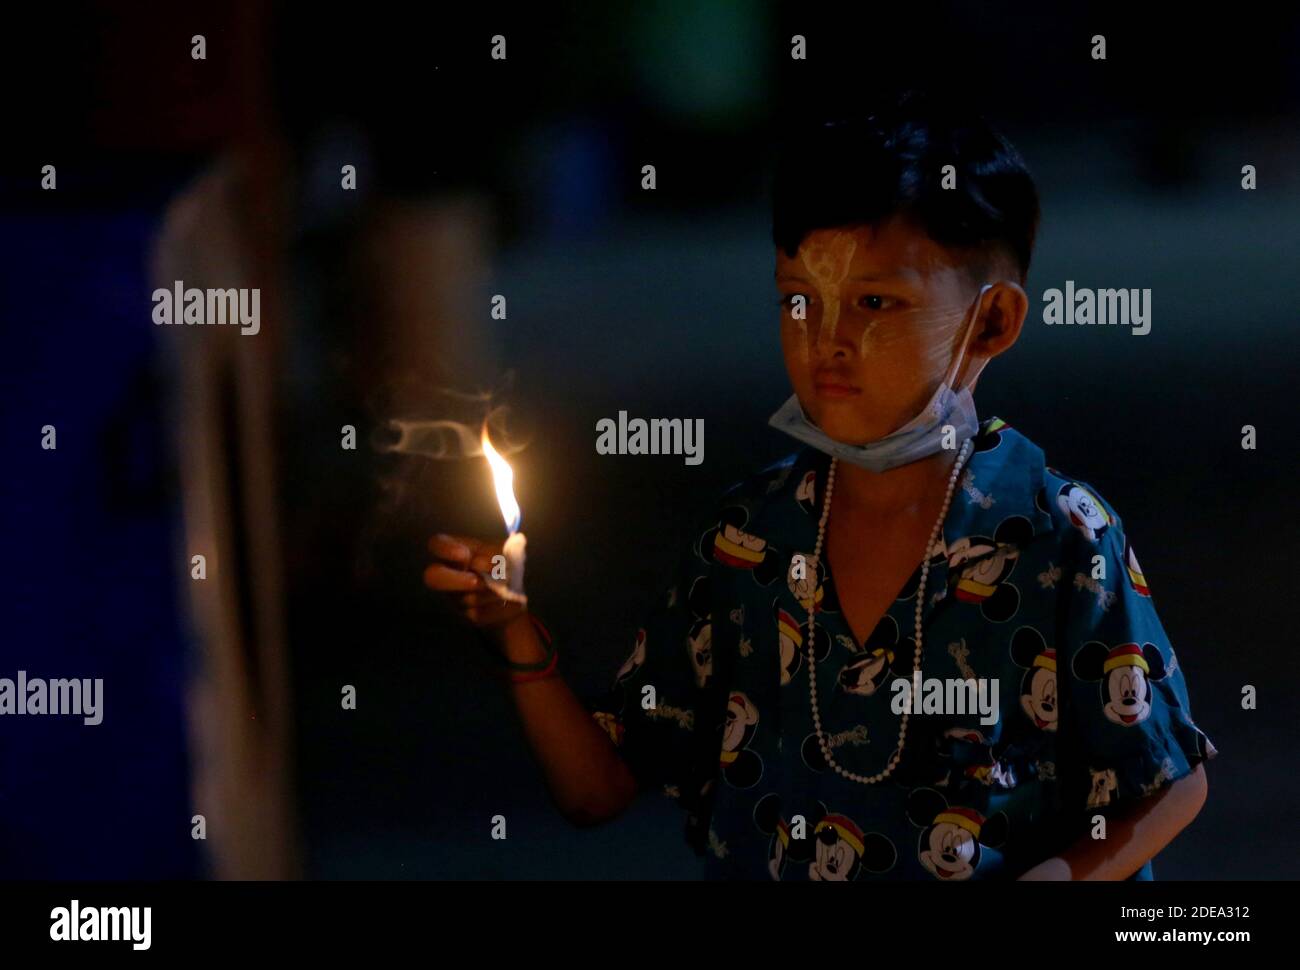 Myanmar, Myanmar. November 2020. Ein Kind zündet während des traditionellen Tazaungdaing Festivals in Yangon, Myanmar, am 29. November 2020 eine Kerze an. Das Tazaungdaing Festival, auch bekannt als das Festival der Lichter, fällt auf den Vollmondtag im achten Monat des traditionellen Myanmar Kalenders. Es wird als Nationalfeiertag in Myanmar gefeiert und markiert das Ende der Regenzeit. Quelle: U Aung/Xinhua/Alamy Live News Stockfoto